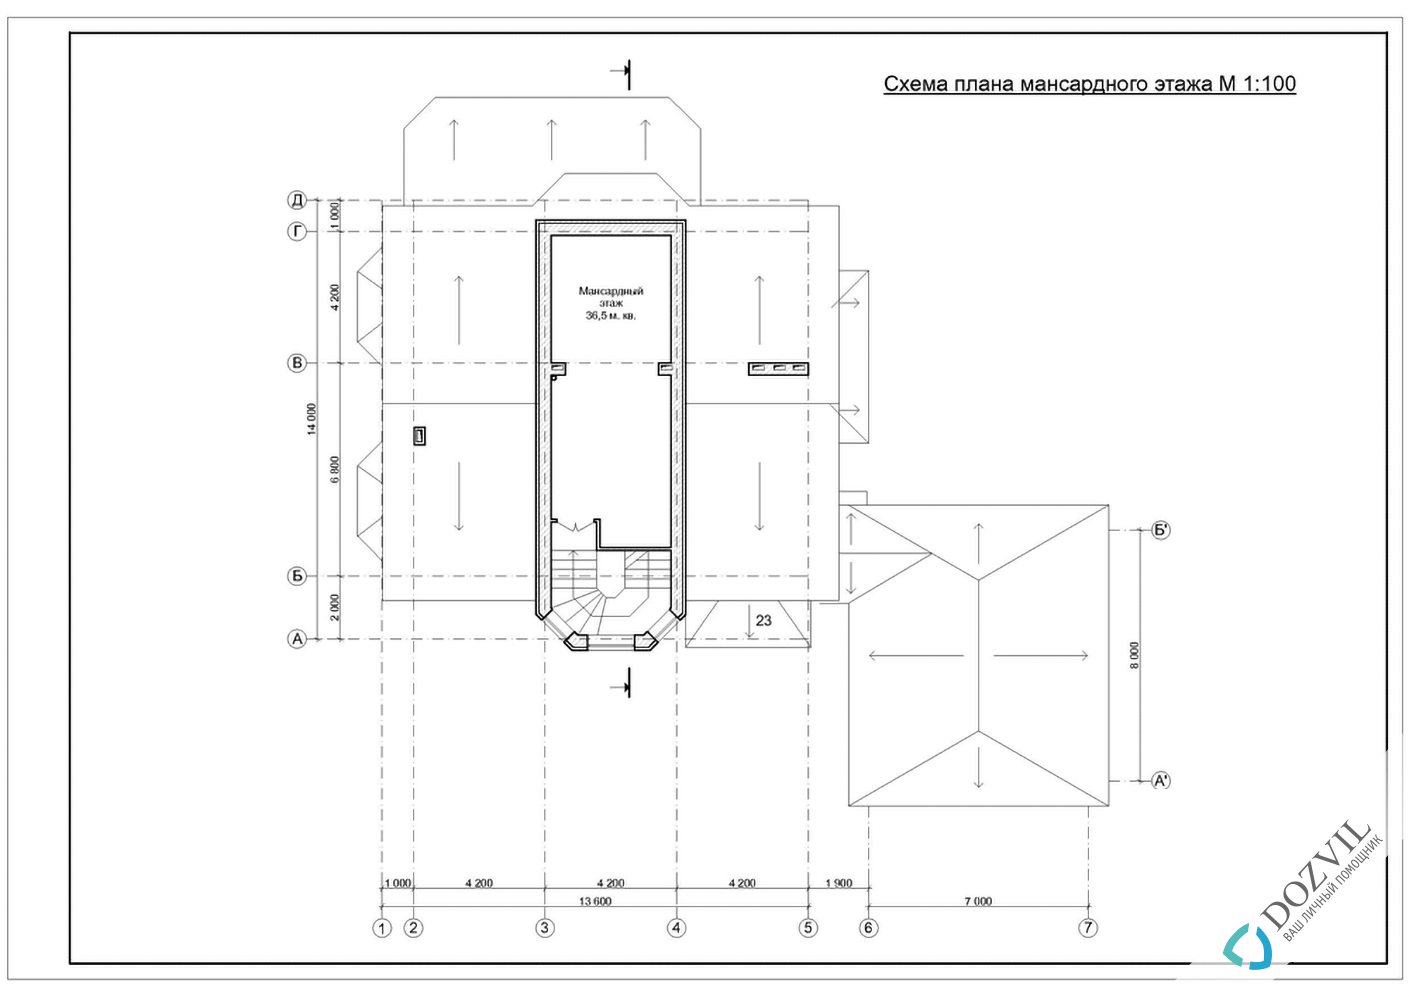 Узаконить реконструкцию> Реконструкция дома с общей площадью до 500 квадратных метров > 2 этап - Разработка эскиза намерений строительства